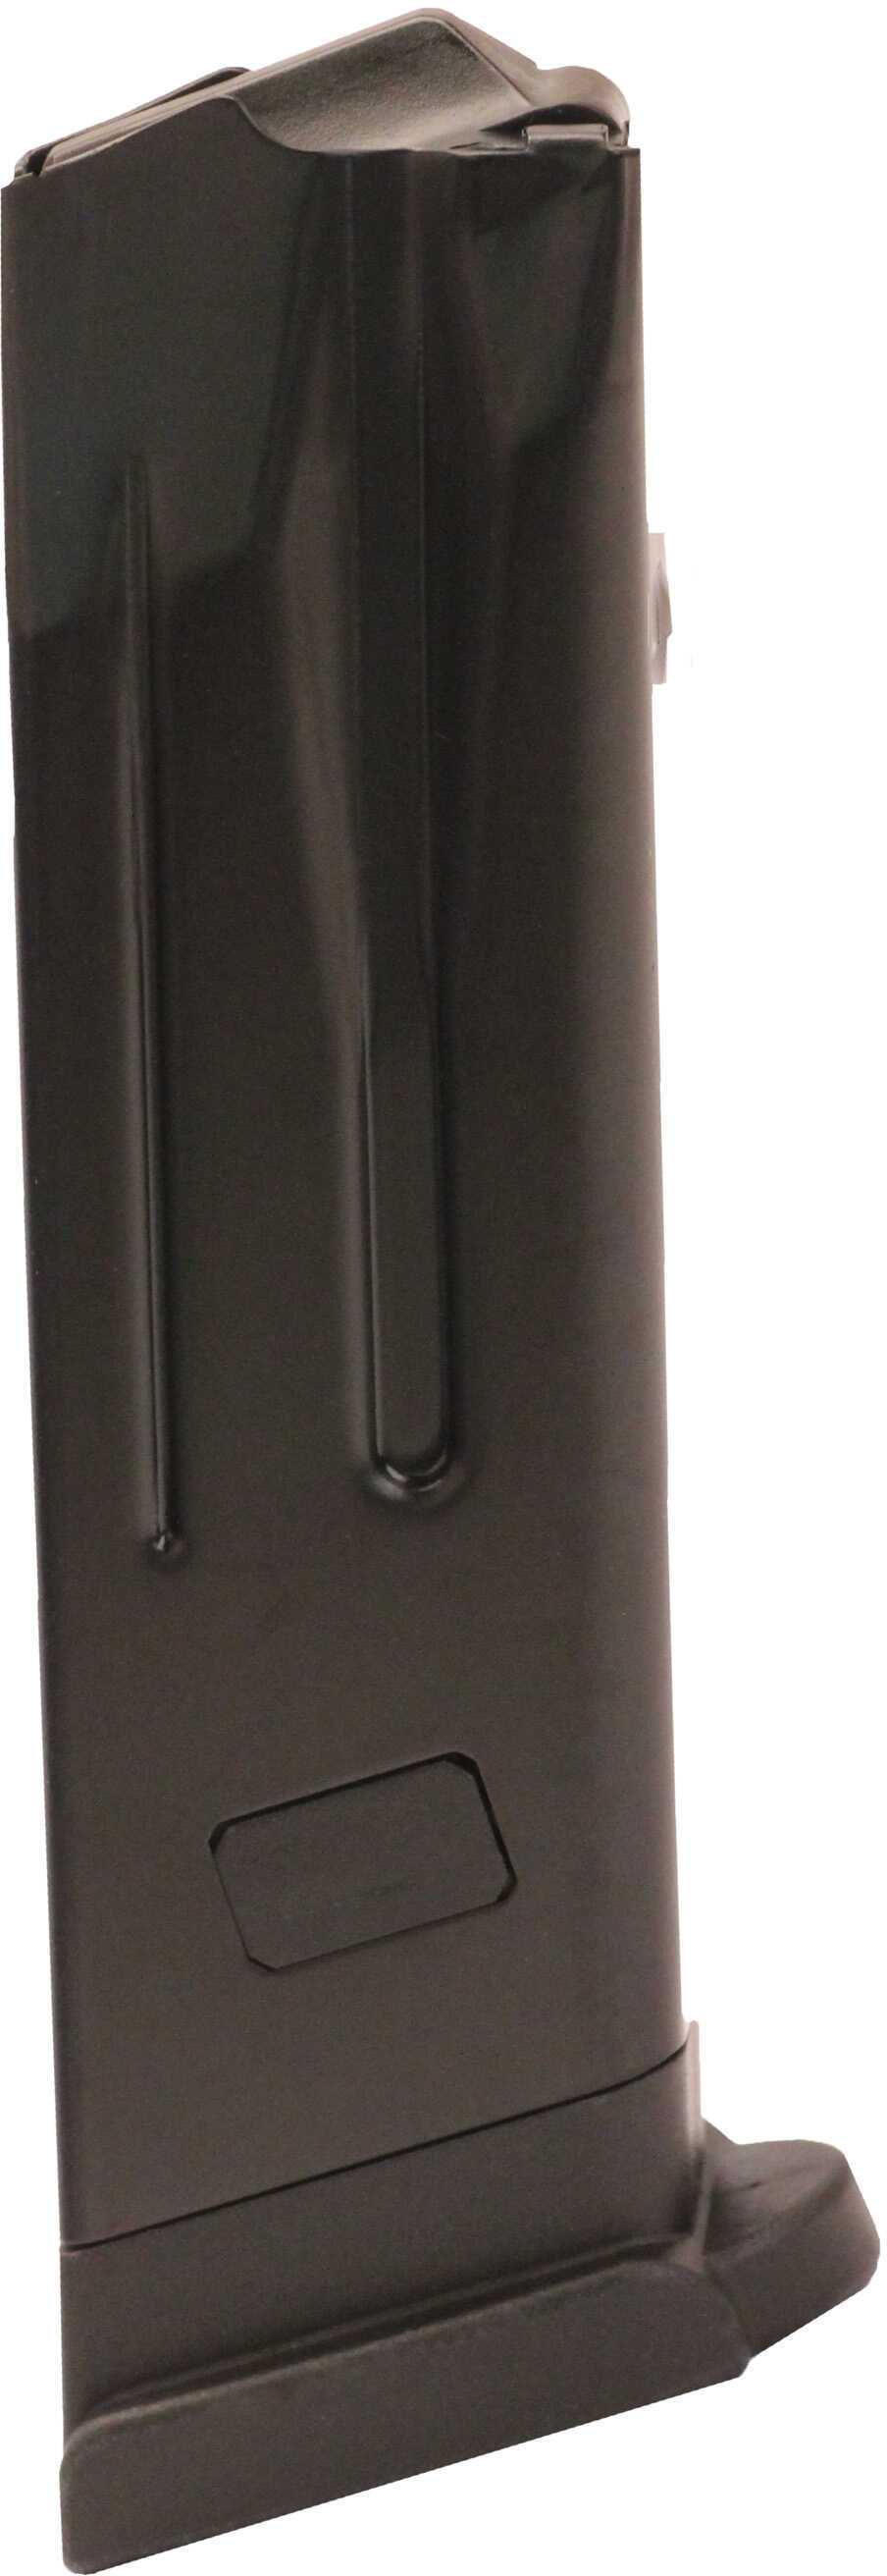 Heckler & Koch P30/VP9, 9mm Luger, 10 Rounds Magazine Md: 229750S